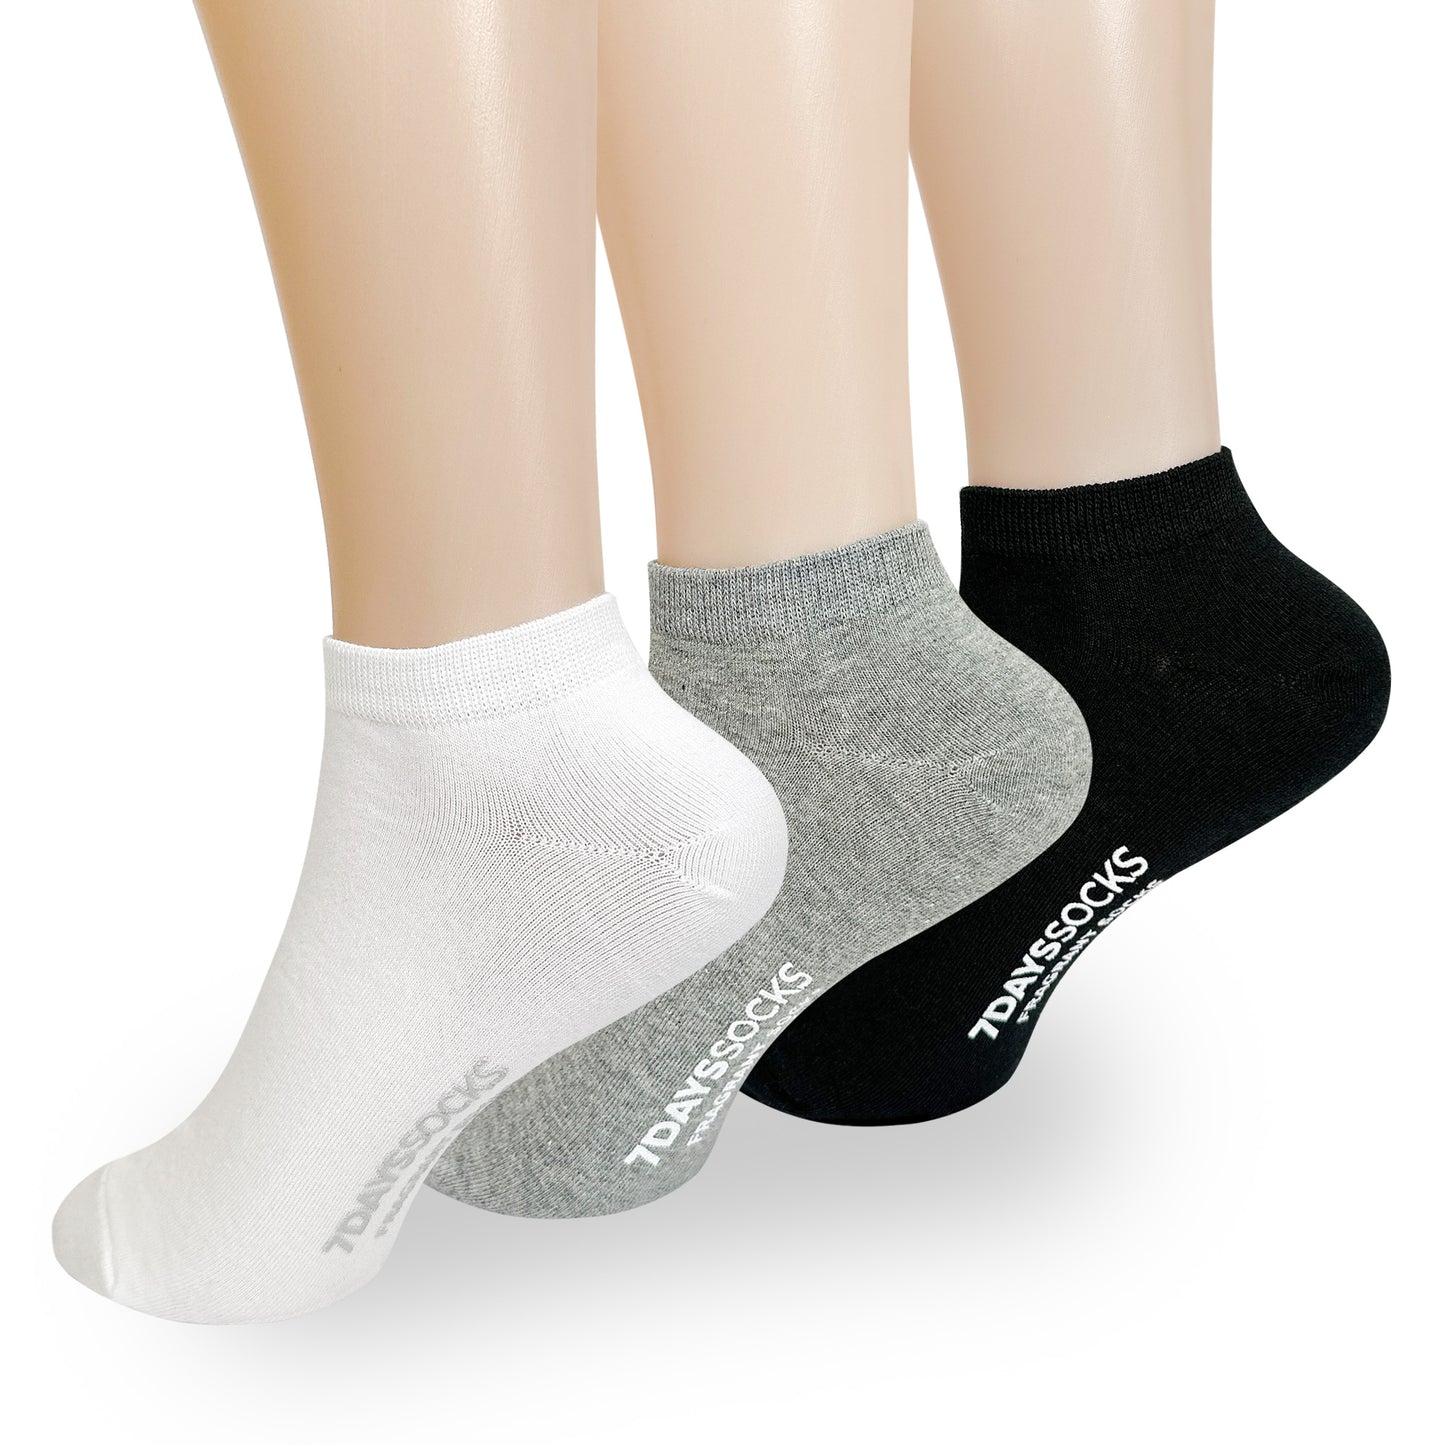 Women's Ankle Odor-Free Fragrant Cotton Socks